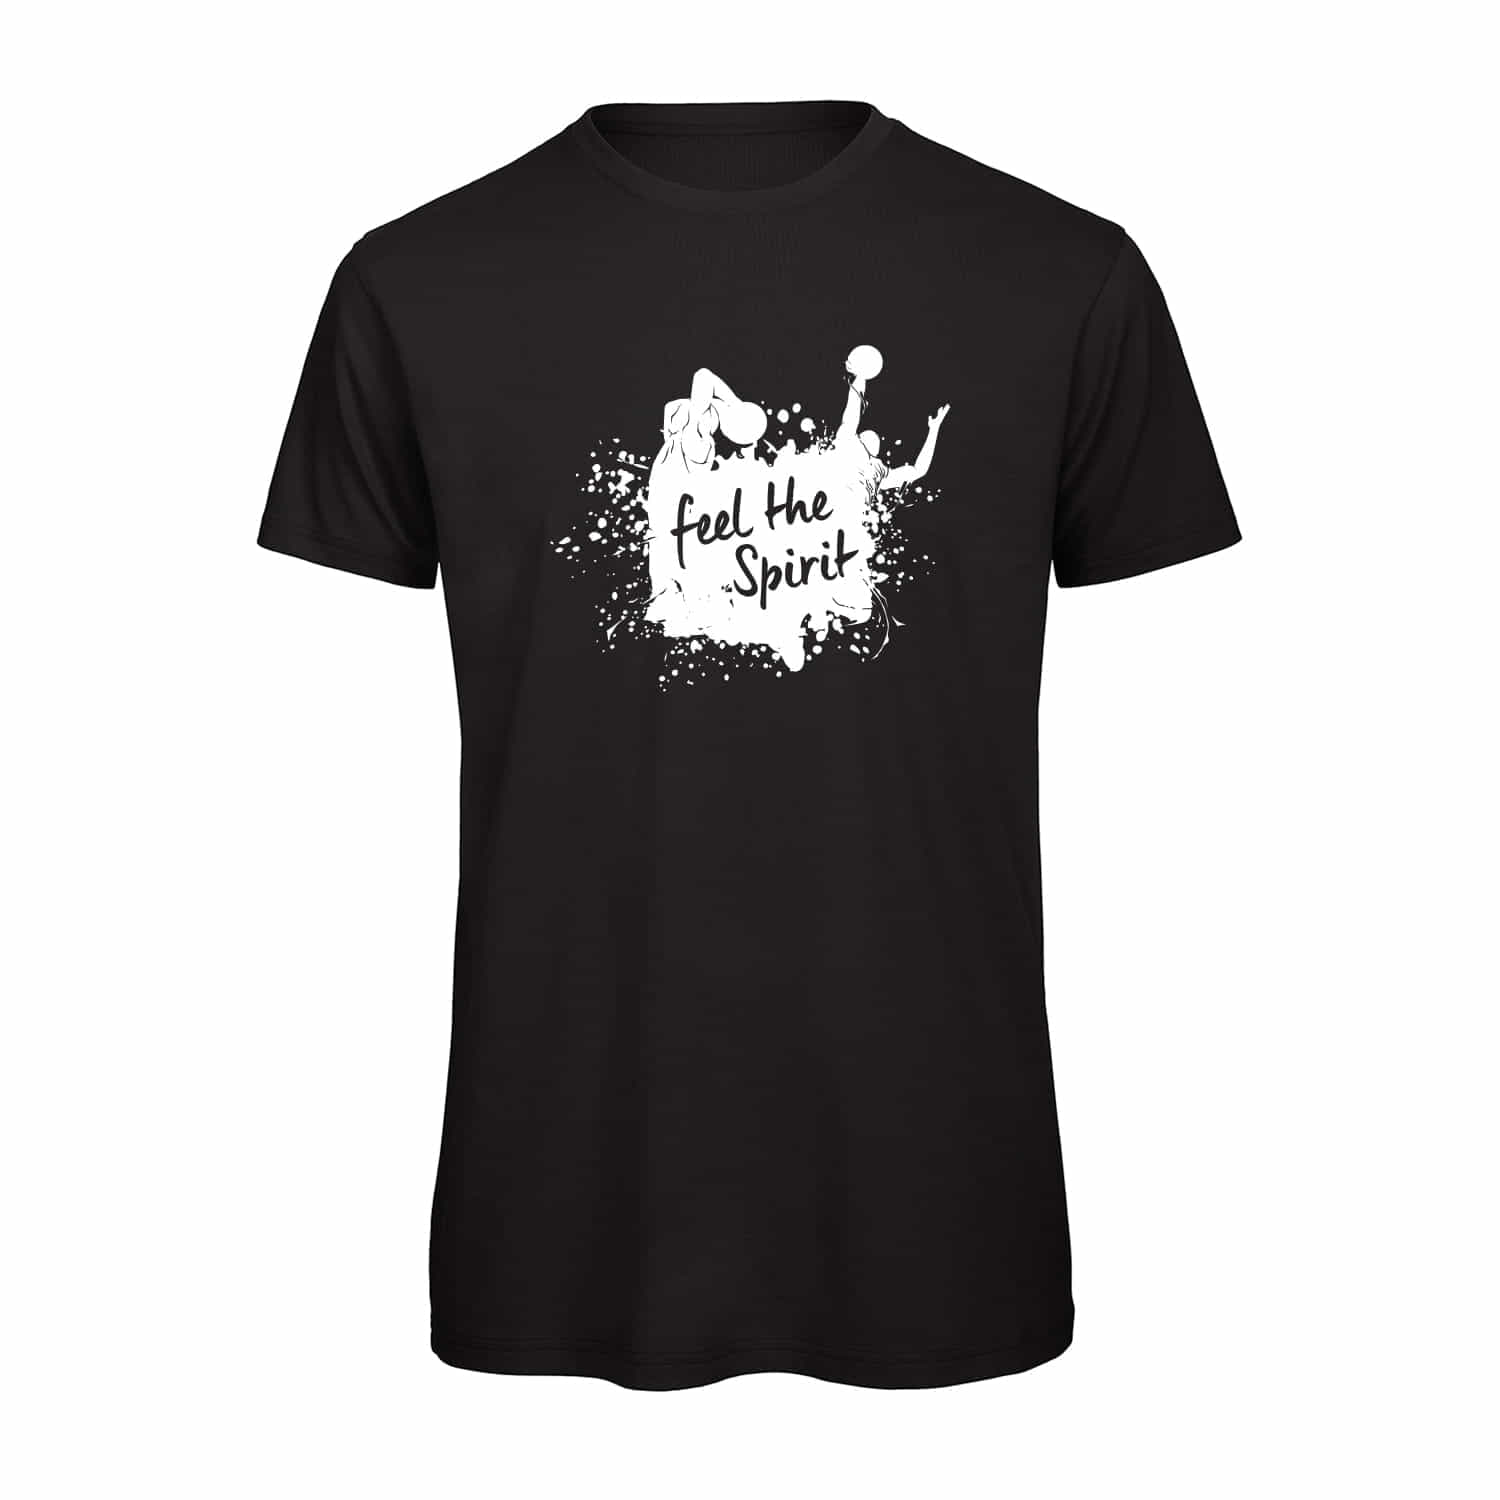 Herren T-Shirt "Feel the Spirit"